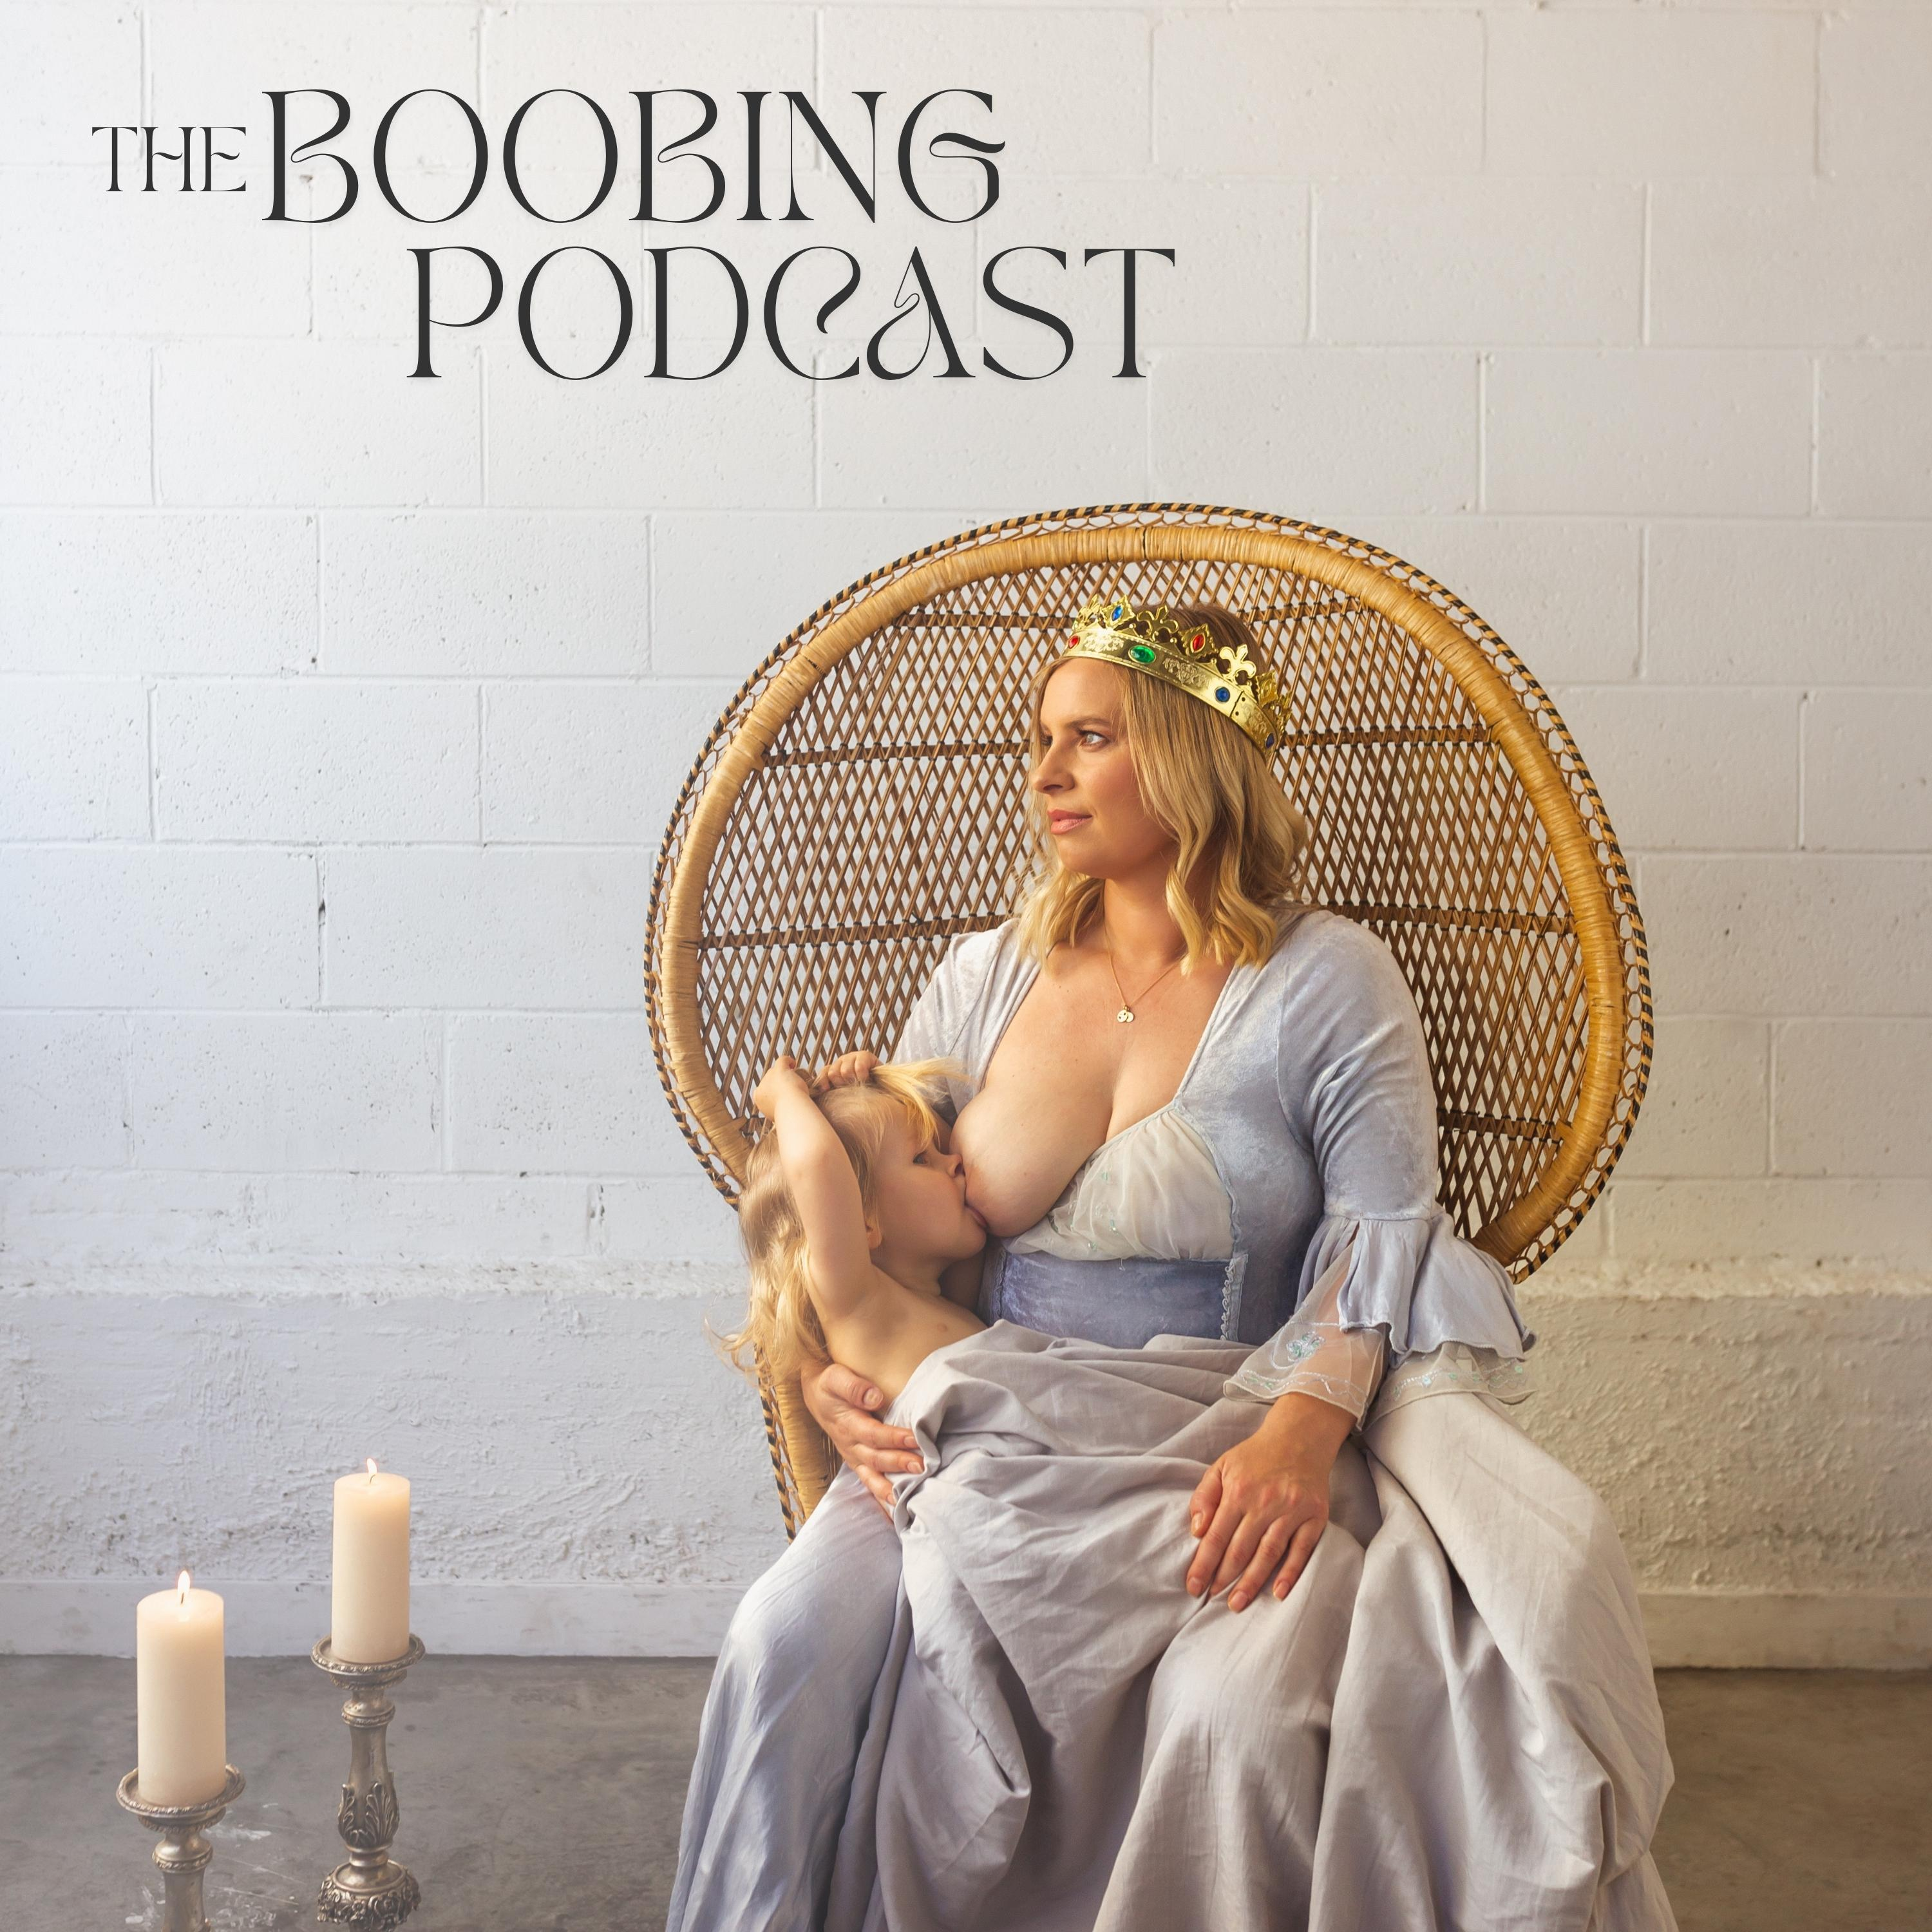 The Boobing Podcast - Episode 4 - Rach Waia - Tiny Hearts Education